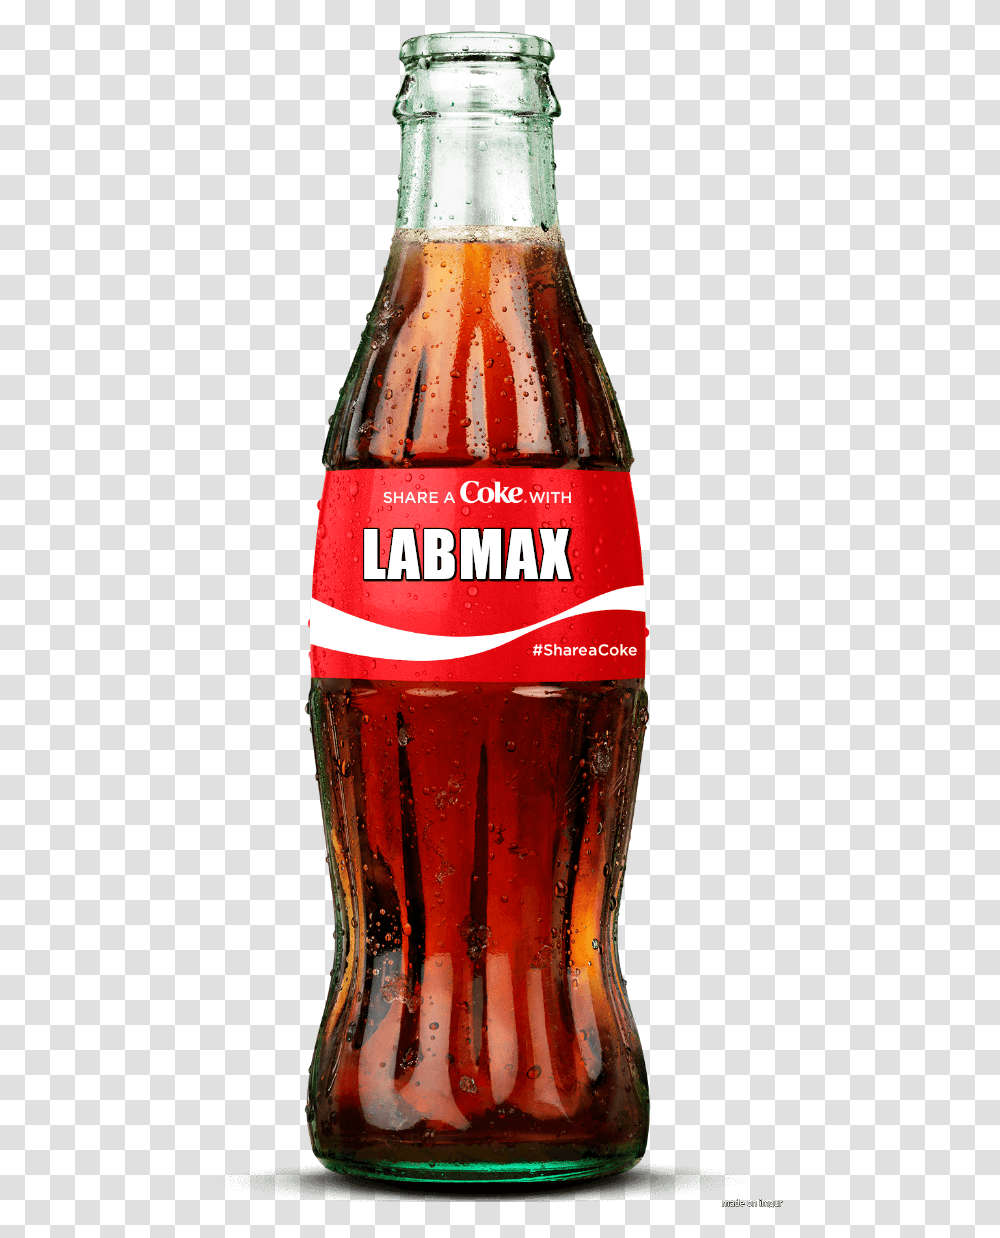 Coca Cola Bottle Background Share A Coke Bottle, Soda, Beverage, Drink, Pop Bottle Transparent Png